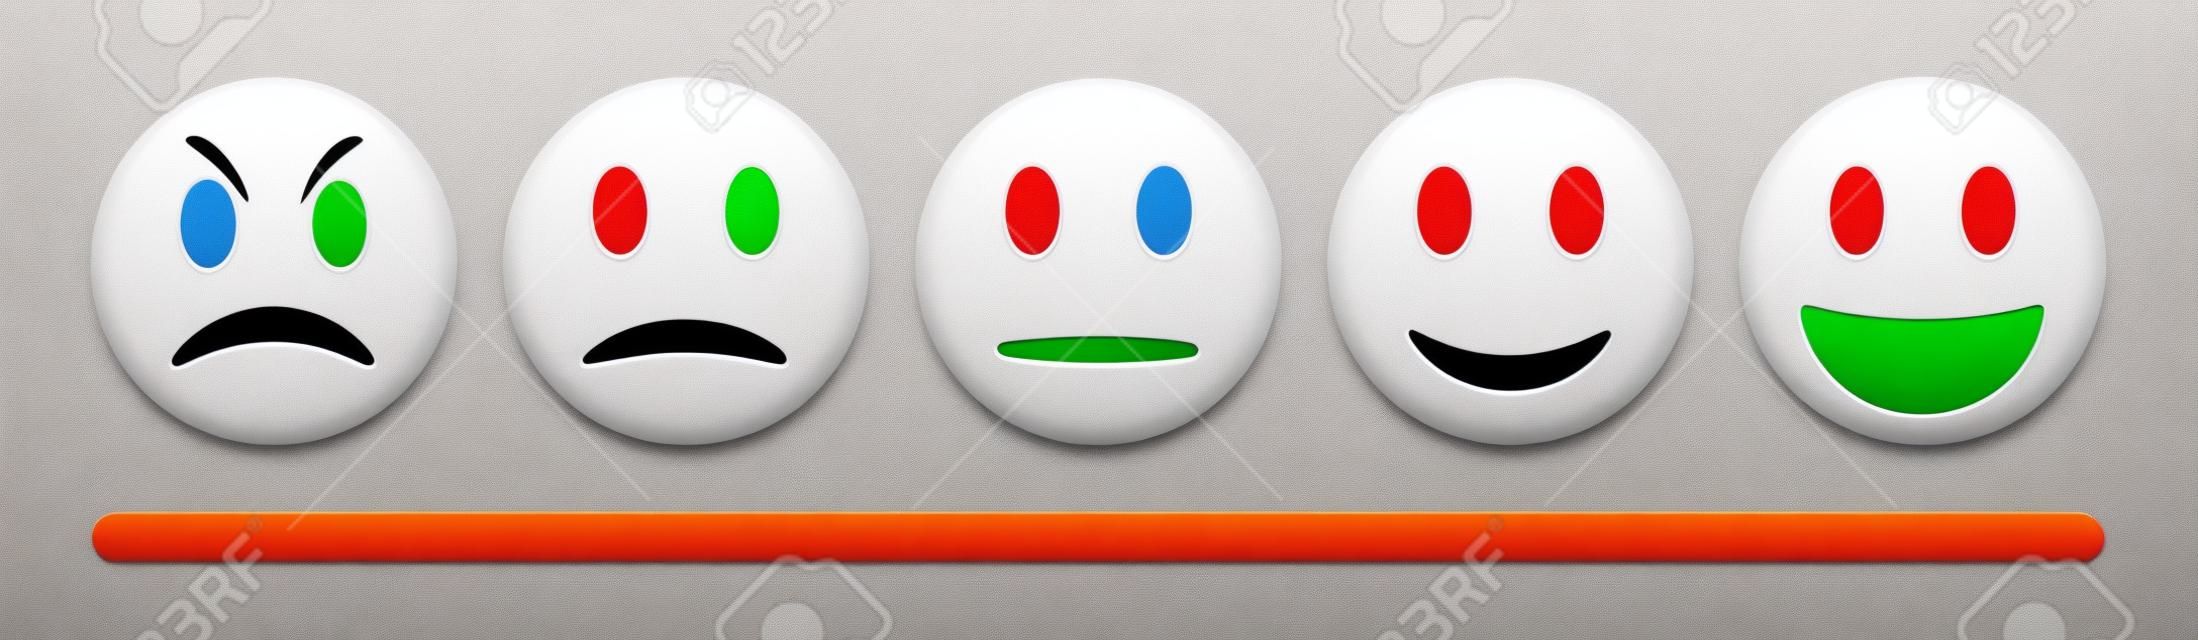 Vector emotie feedback schaal op witte achtergrond. Boos, verdrietig, neutraal en gelukkig emoticon set. Glanzend rood, oranje, geel en groen grappige cartoon Emoji pictogram. 3D-illustratie